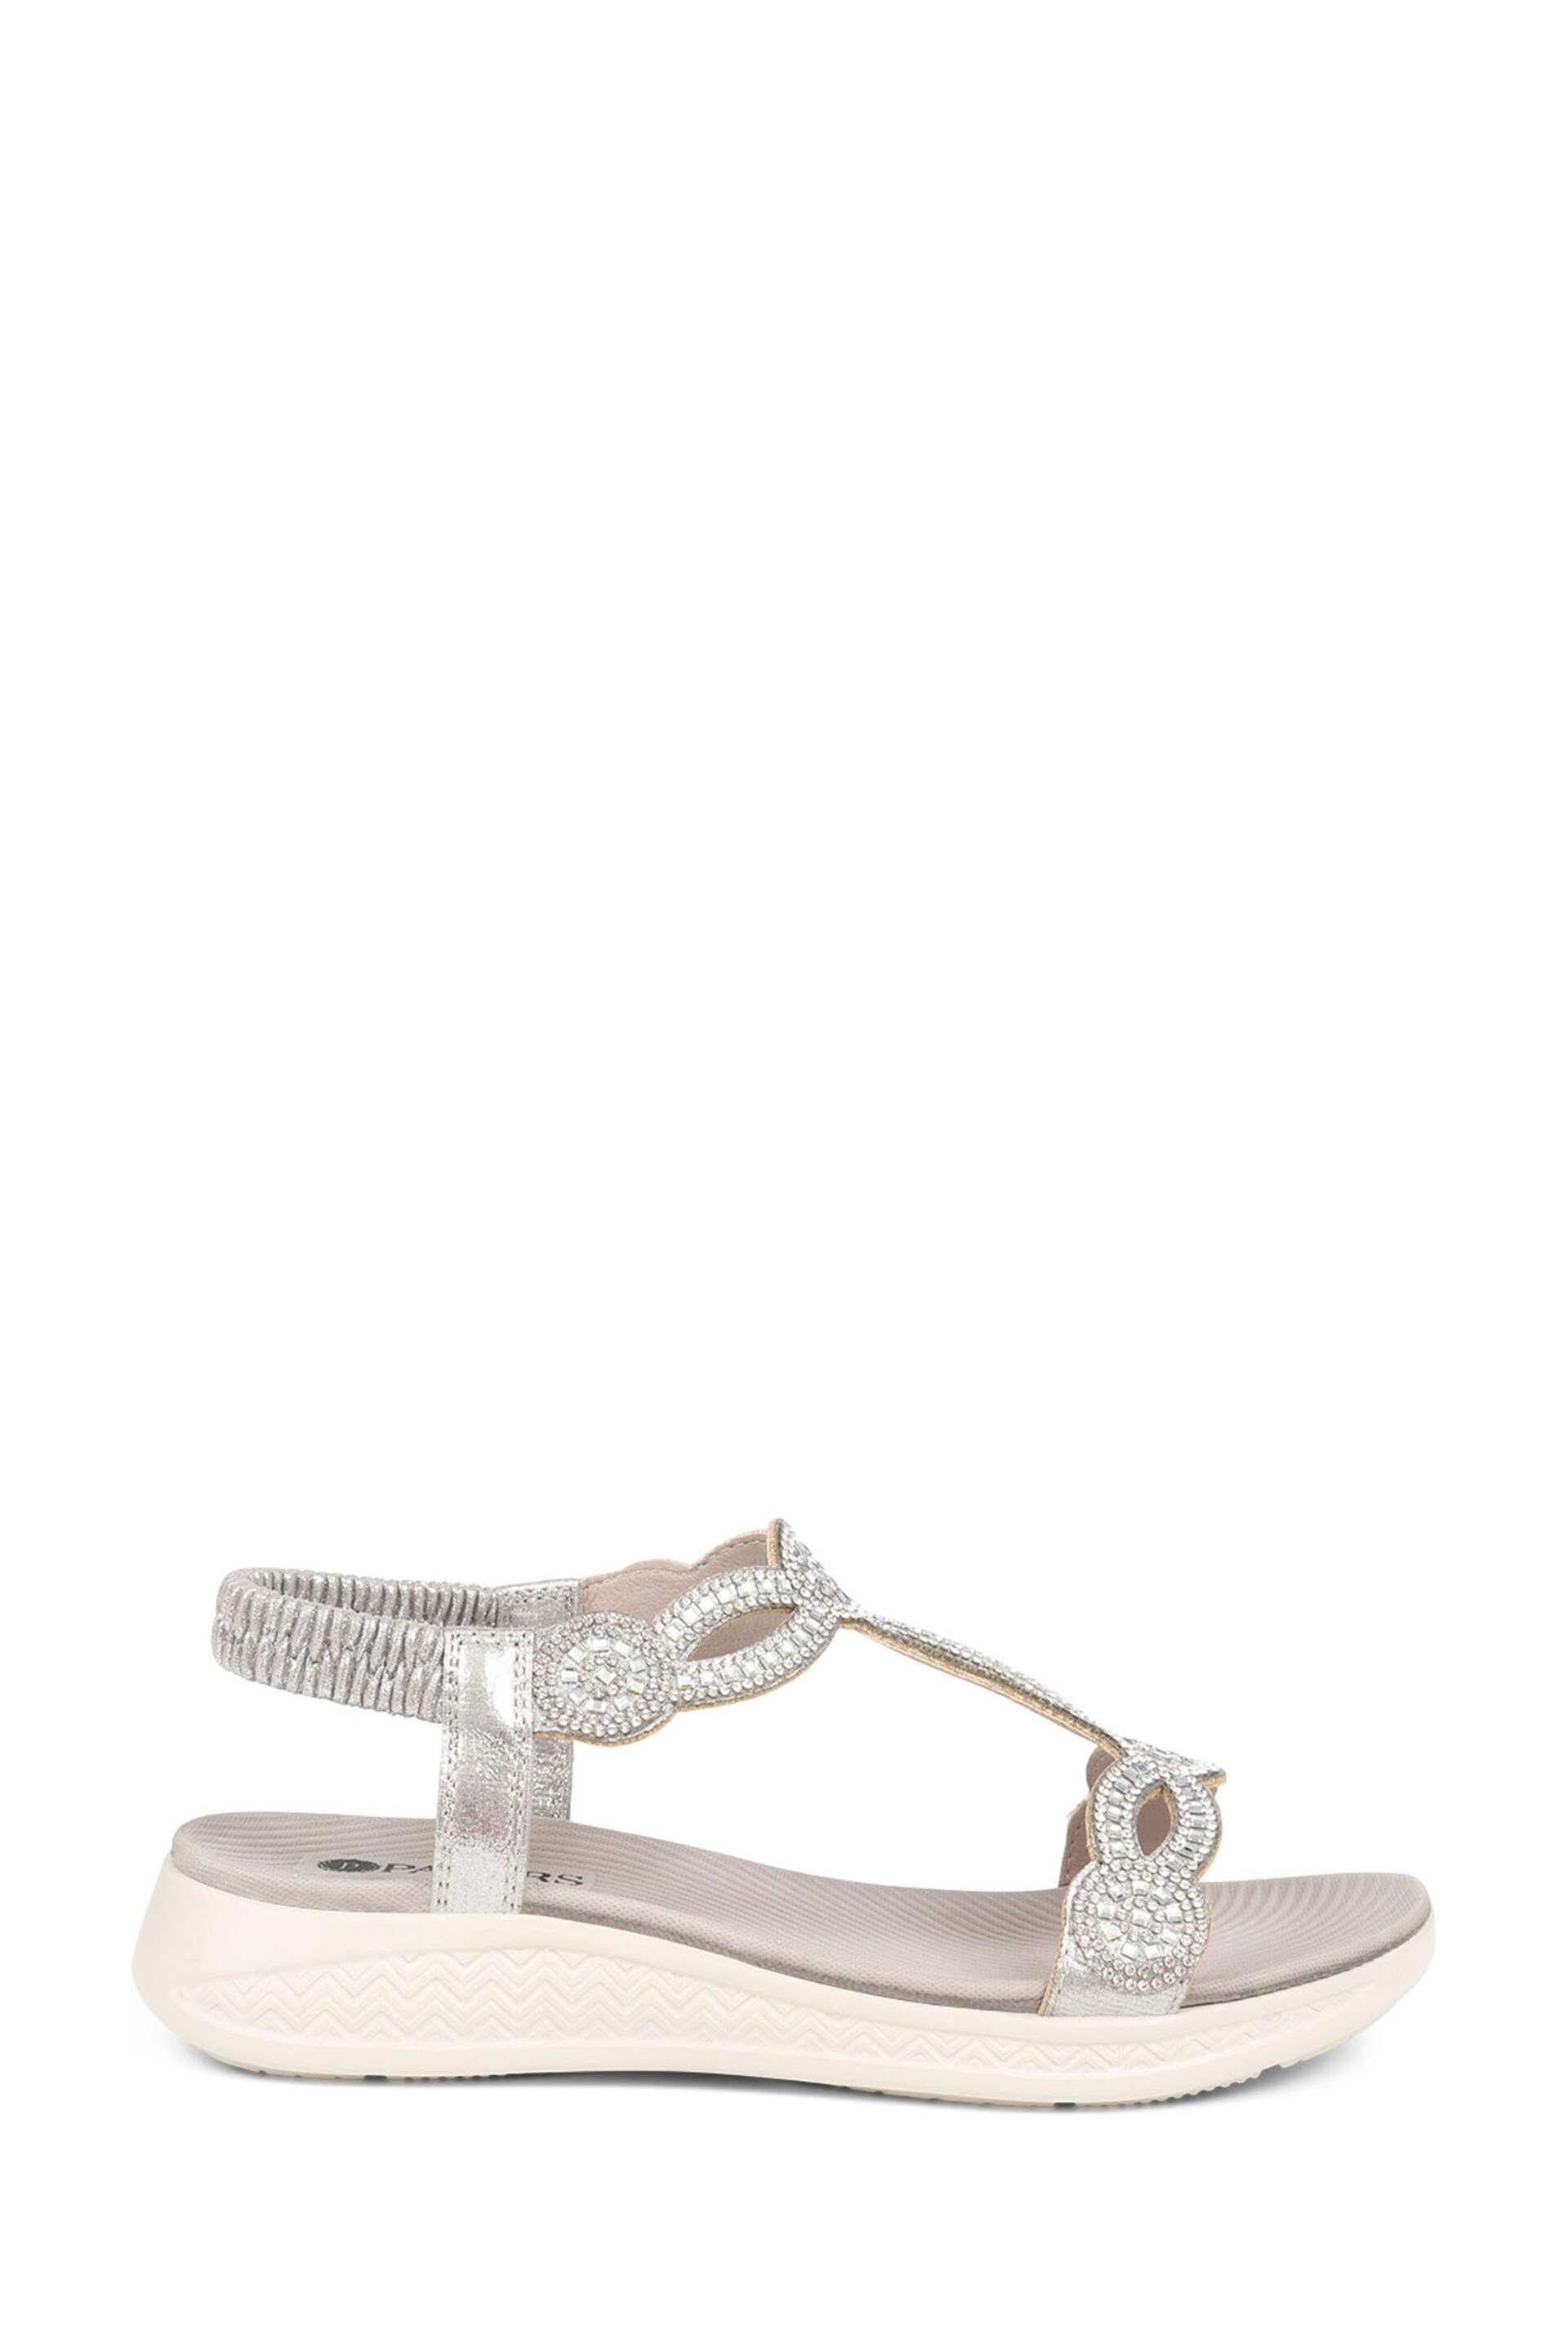 Pavers Grey Embellished Flatform Sandals - Image 1 of 5